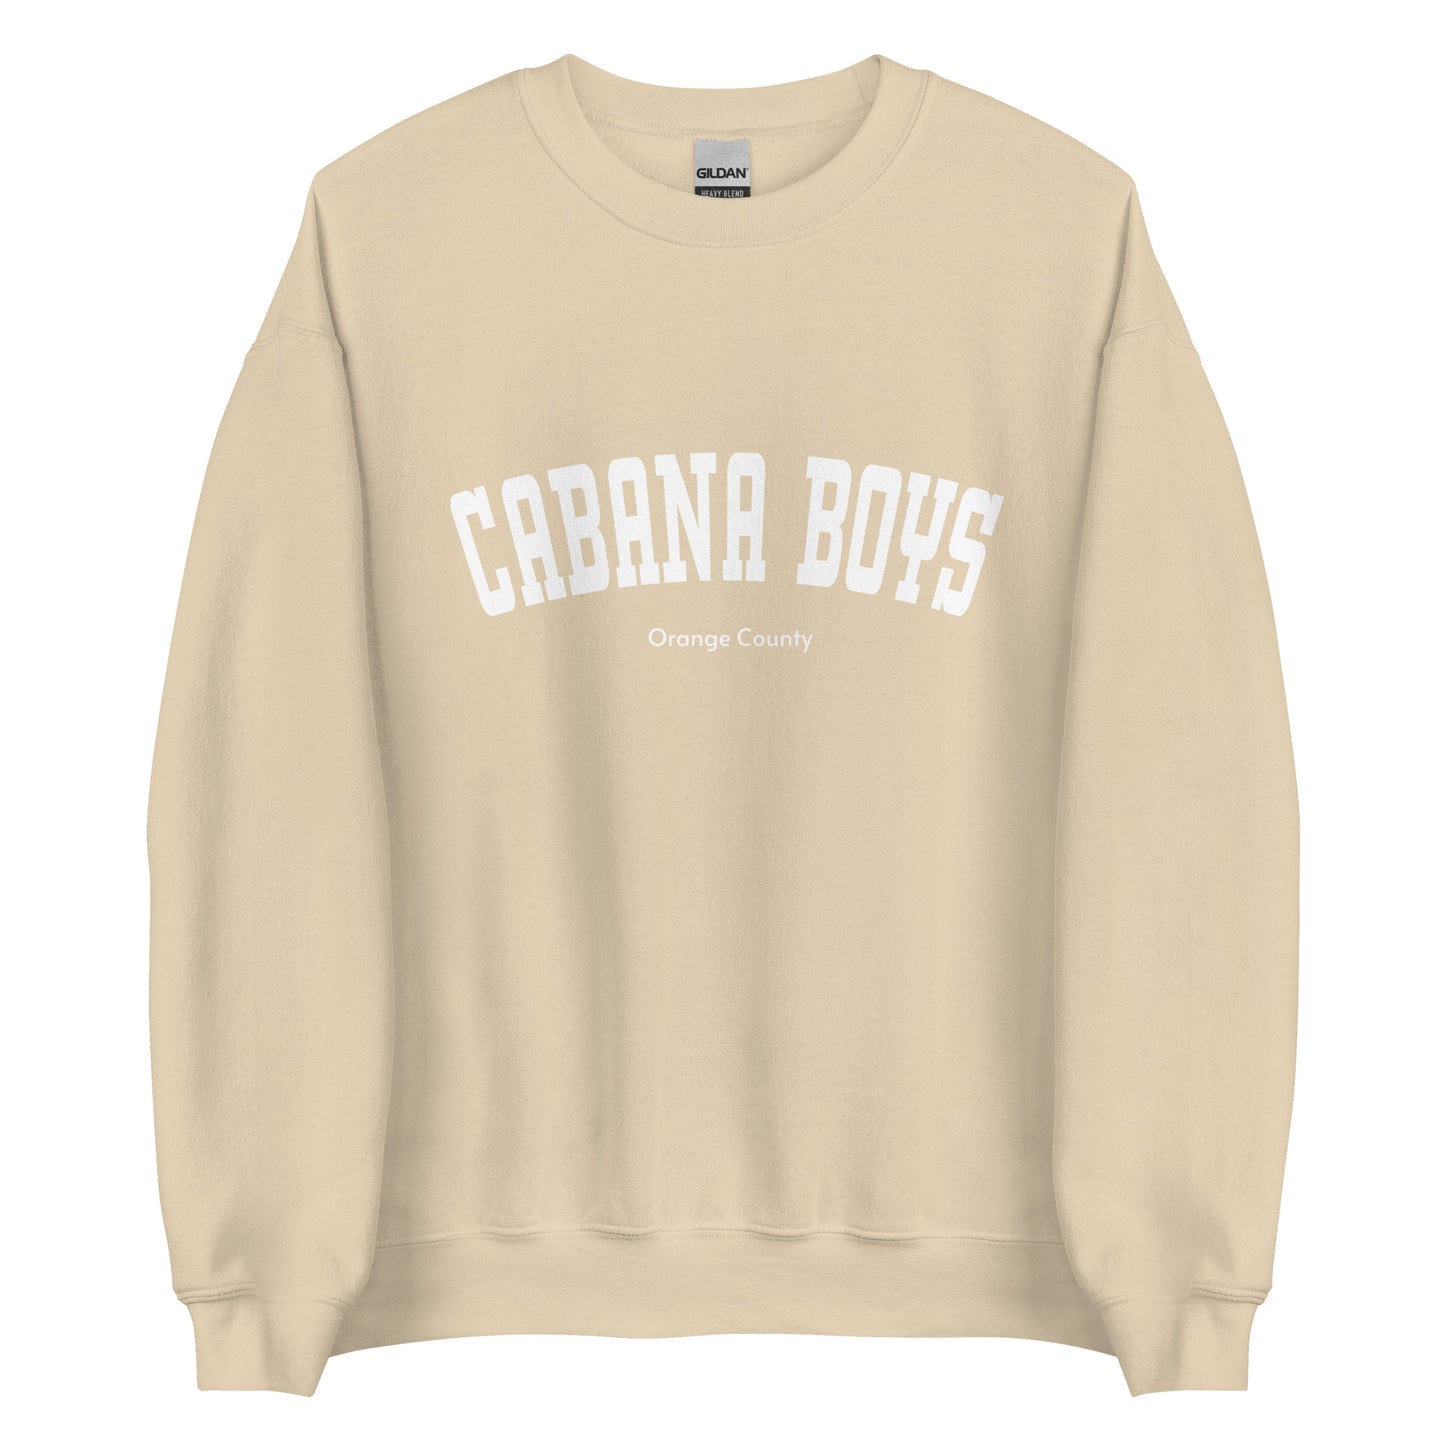 Cabana Boys Orange County Unisex Sweatshirt